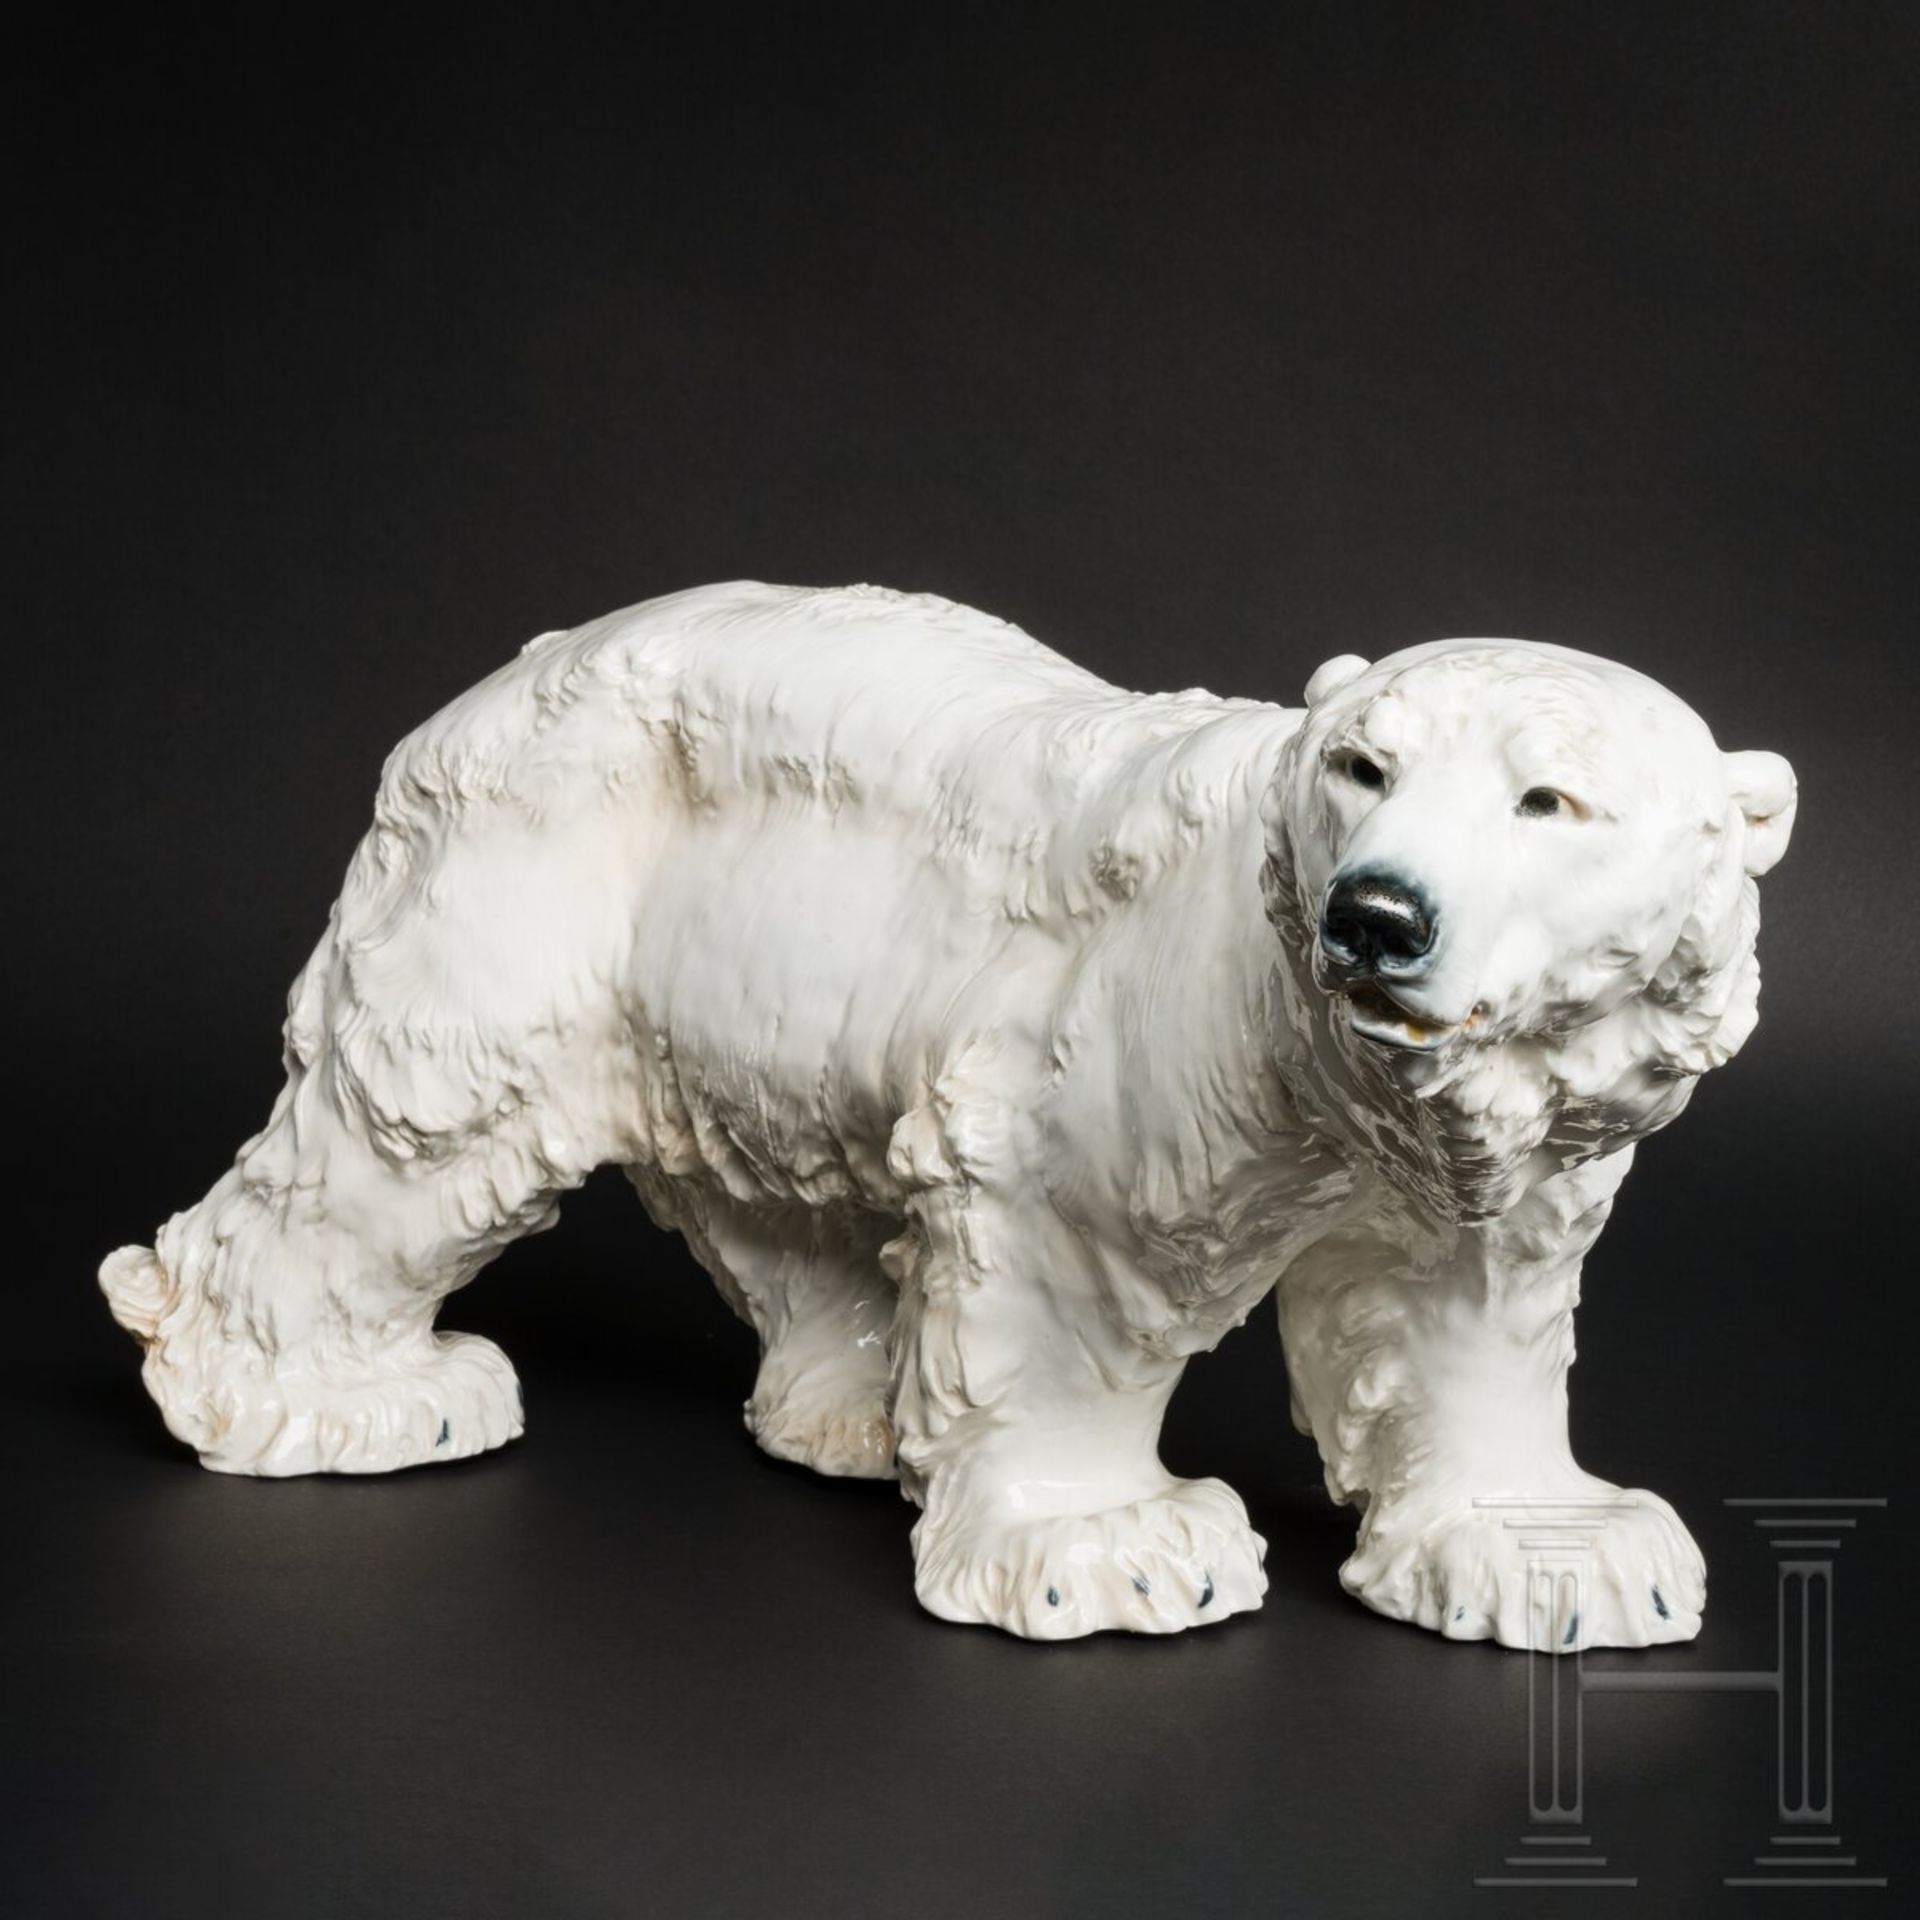 Großer Porzellan-Eisbär (Polarbär), Otto Jarl, 1903 (Modell), Meissen, 2. Hälfte 20. Jhdt. (Ausführu